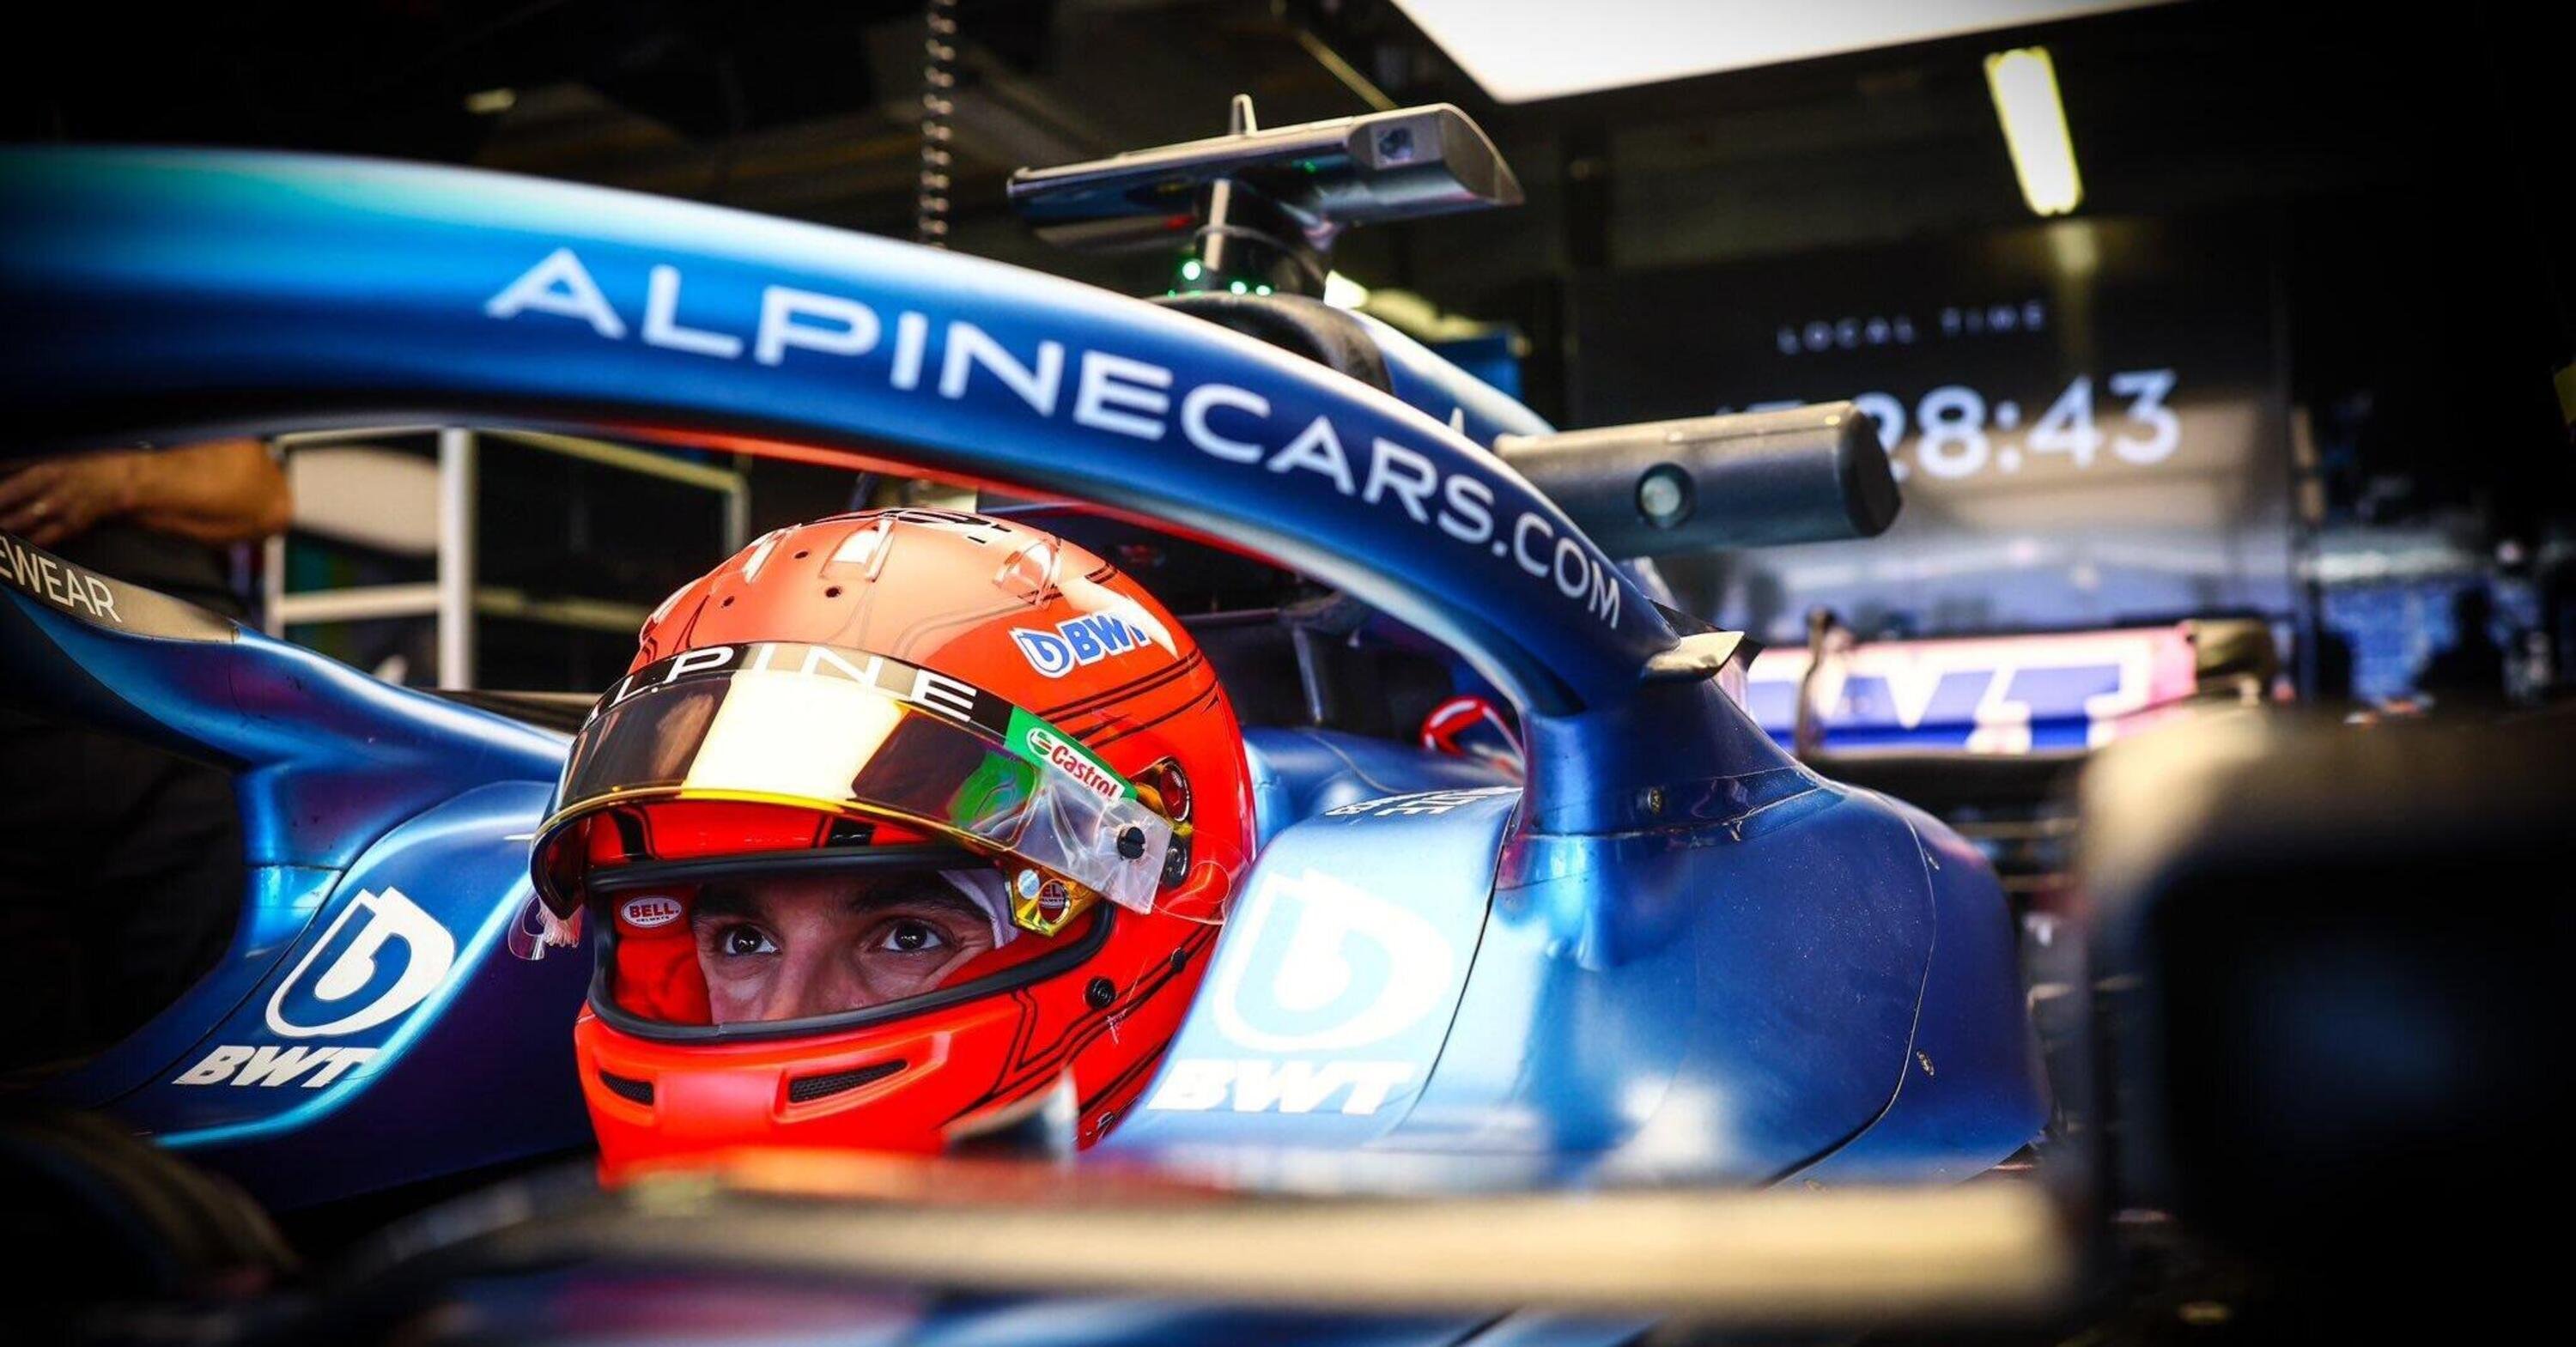 F1. Digiuno spezzato per Alpine a Monaco: un podio che vale come una vittoria per Ocon